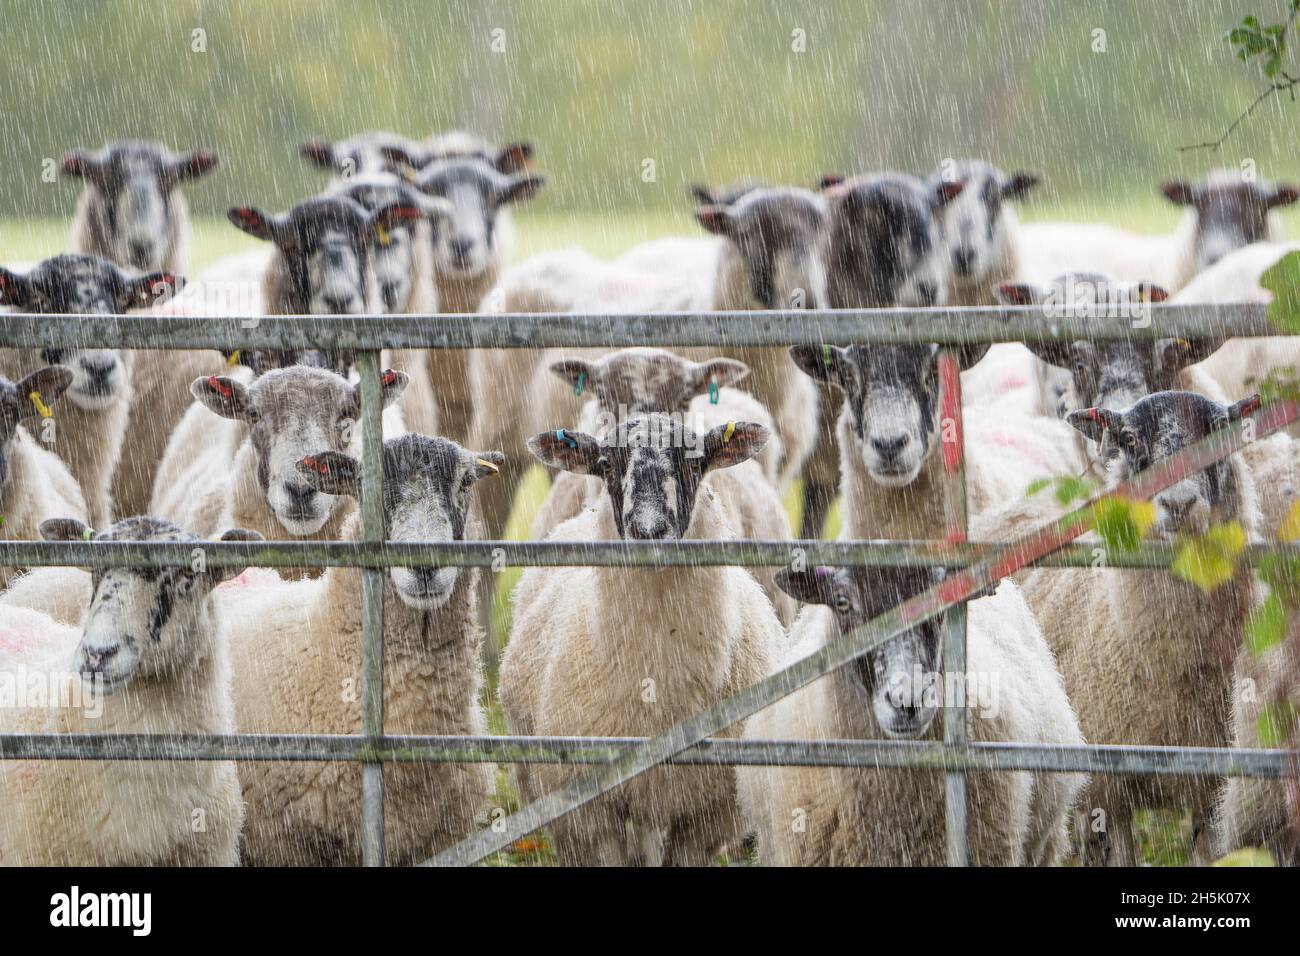 Gregge di pecore del Regno Unito bagnate in attesa sotto la pioggia battente guardando attraverso un cancello di campagna, fissando direttamente la macchina fotografica. Bestiame britannico all'aperto. Foto Stock